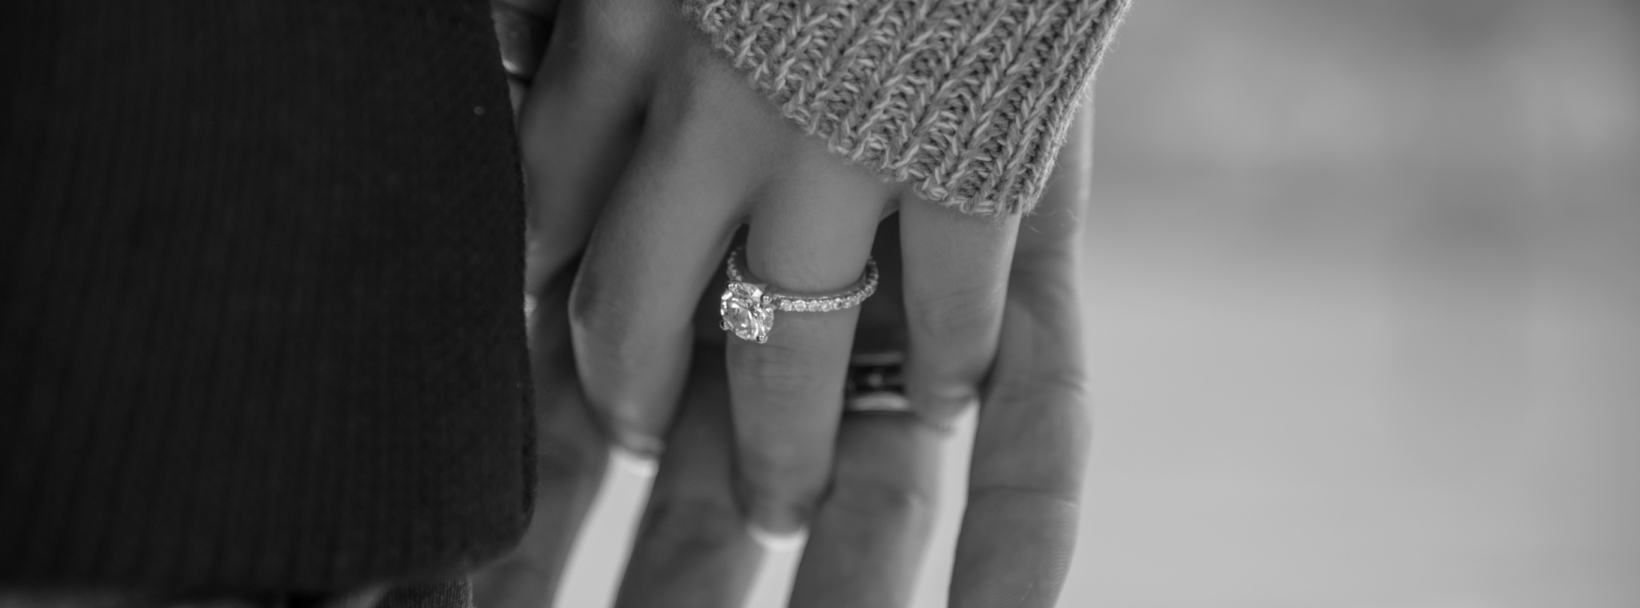 kobieta demonstruje na której ręce nosi się pierścionek zaręczynowy trzymając dłoń partnera